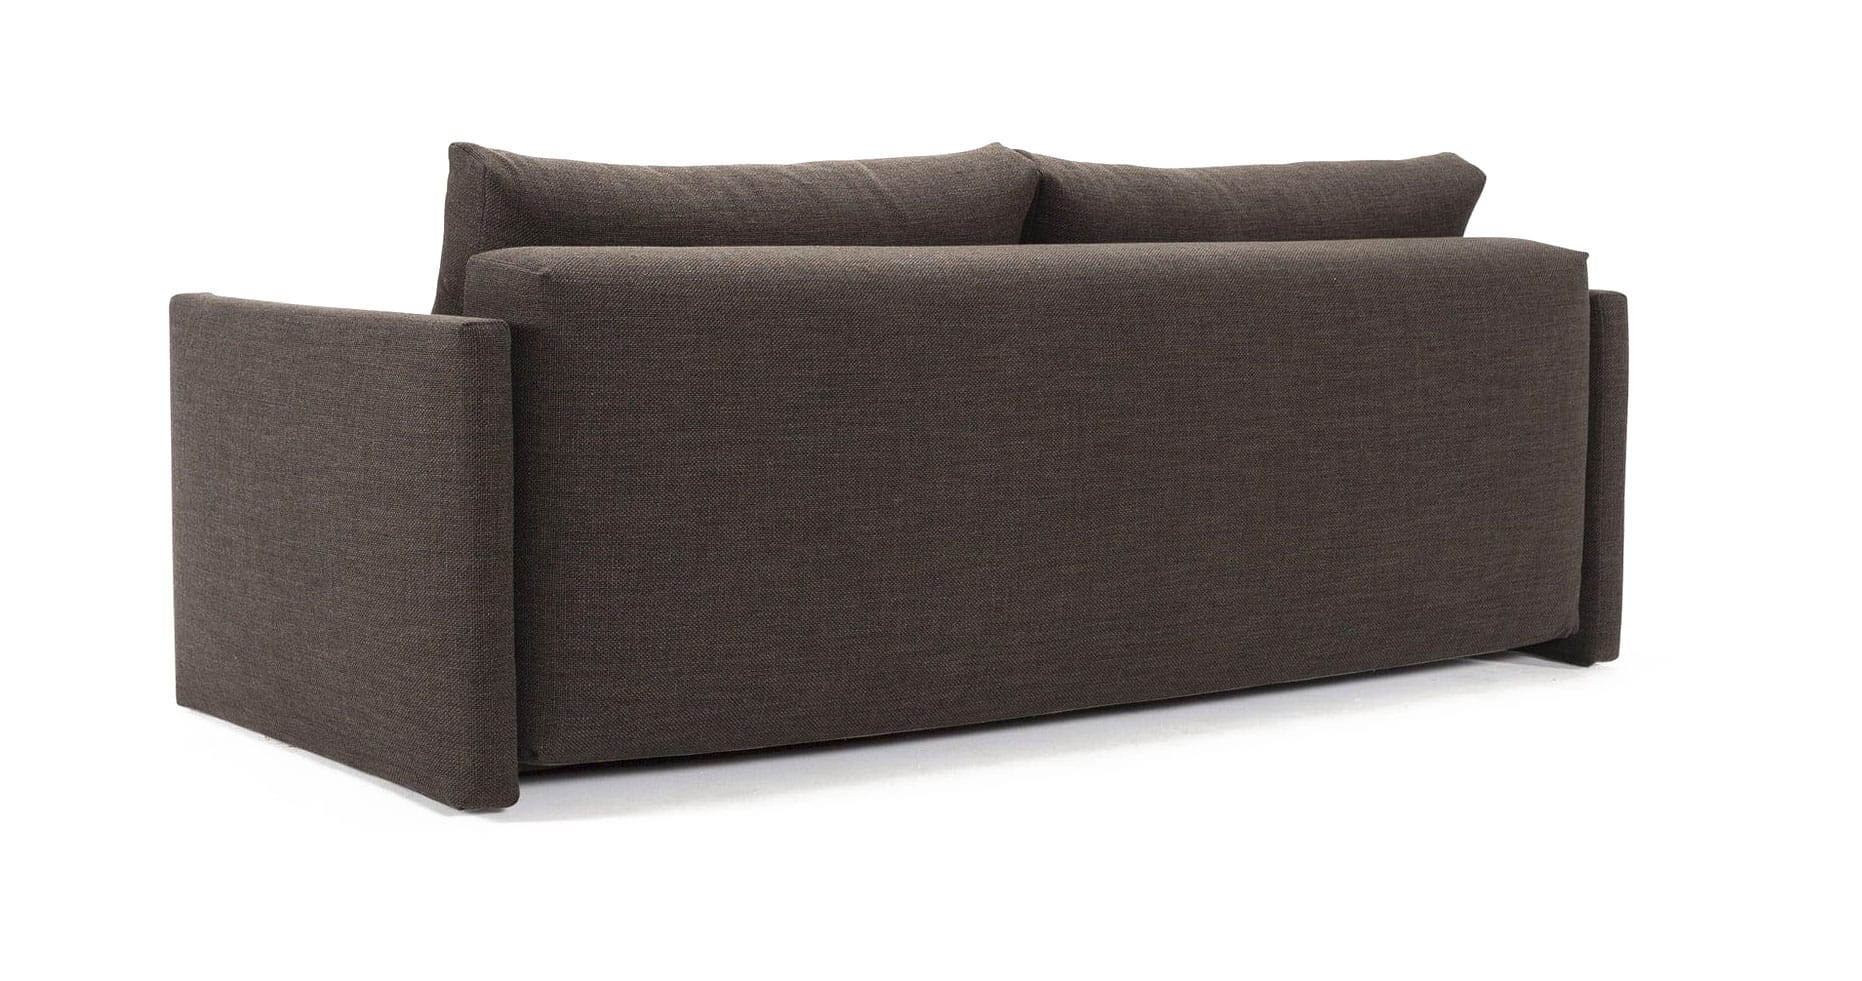 sofa beds in kenya